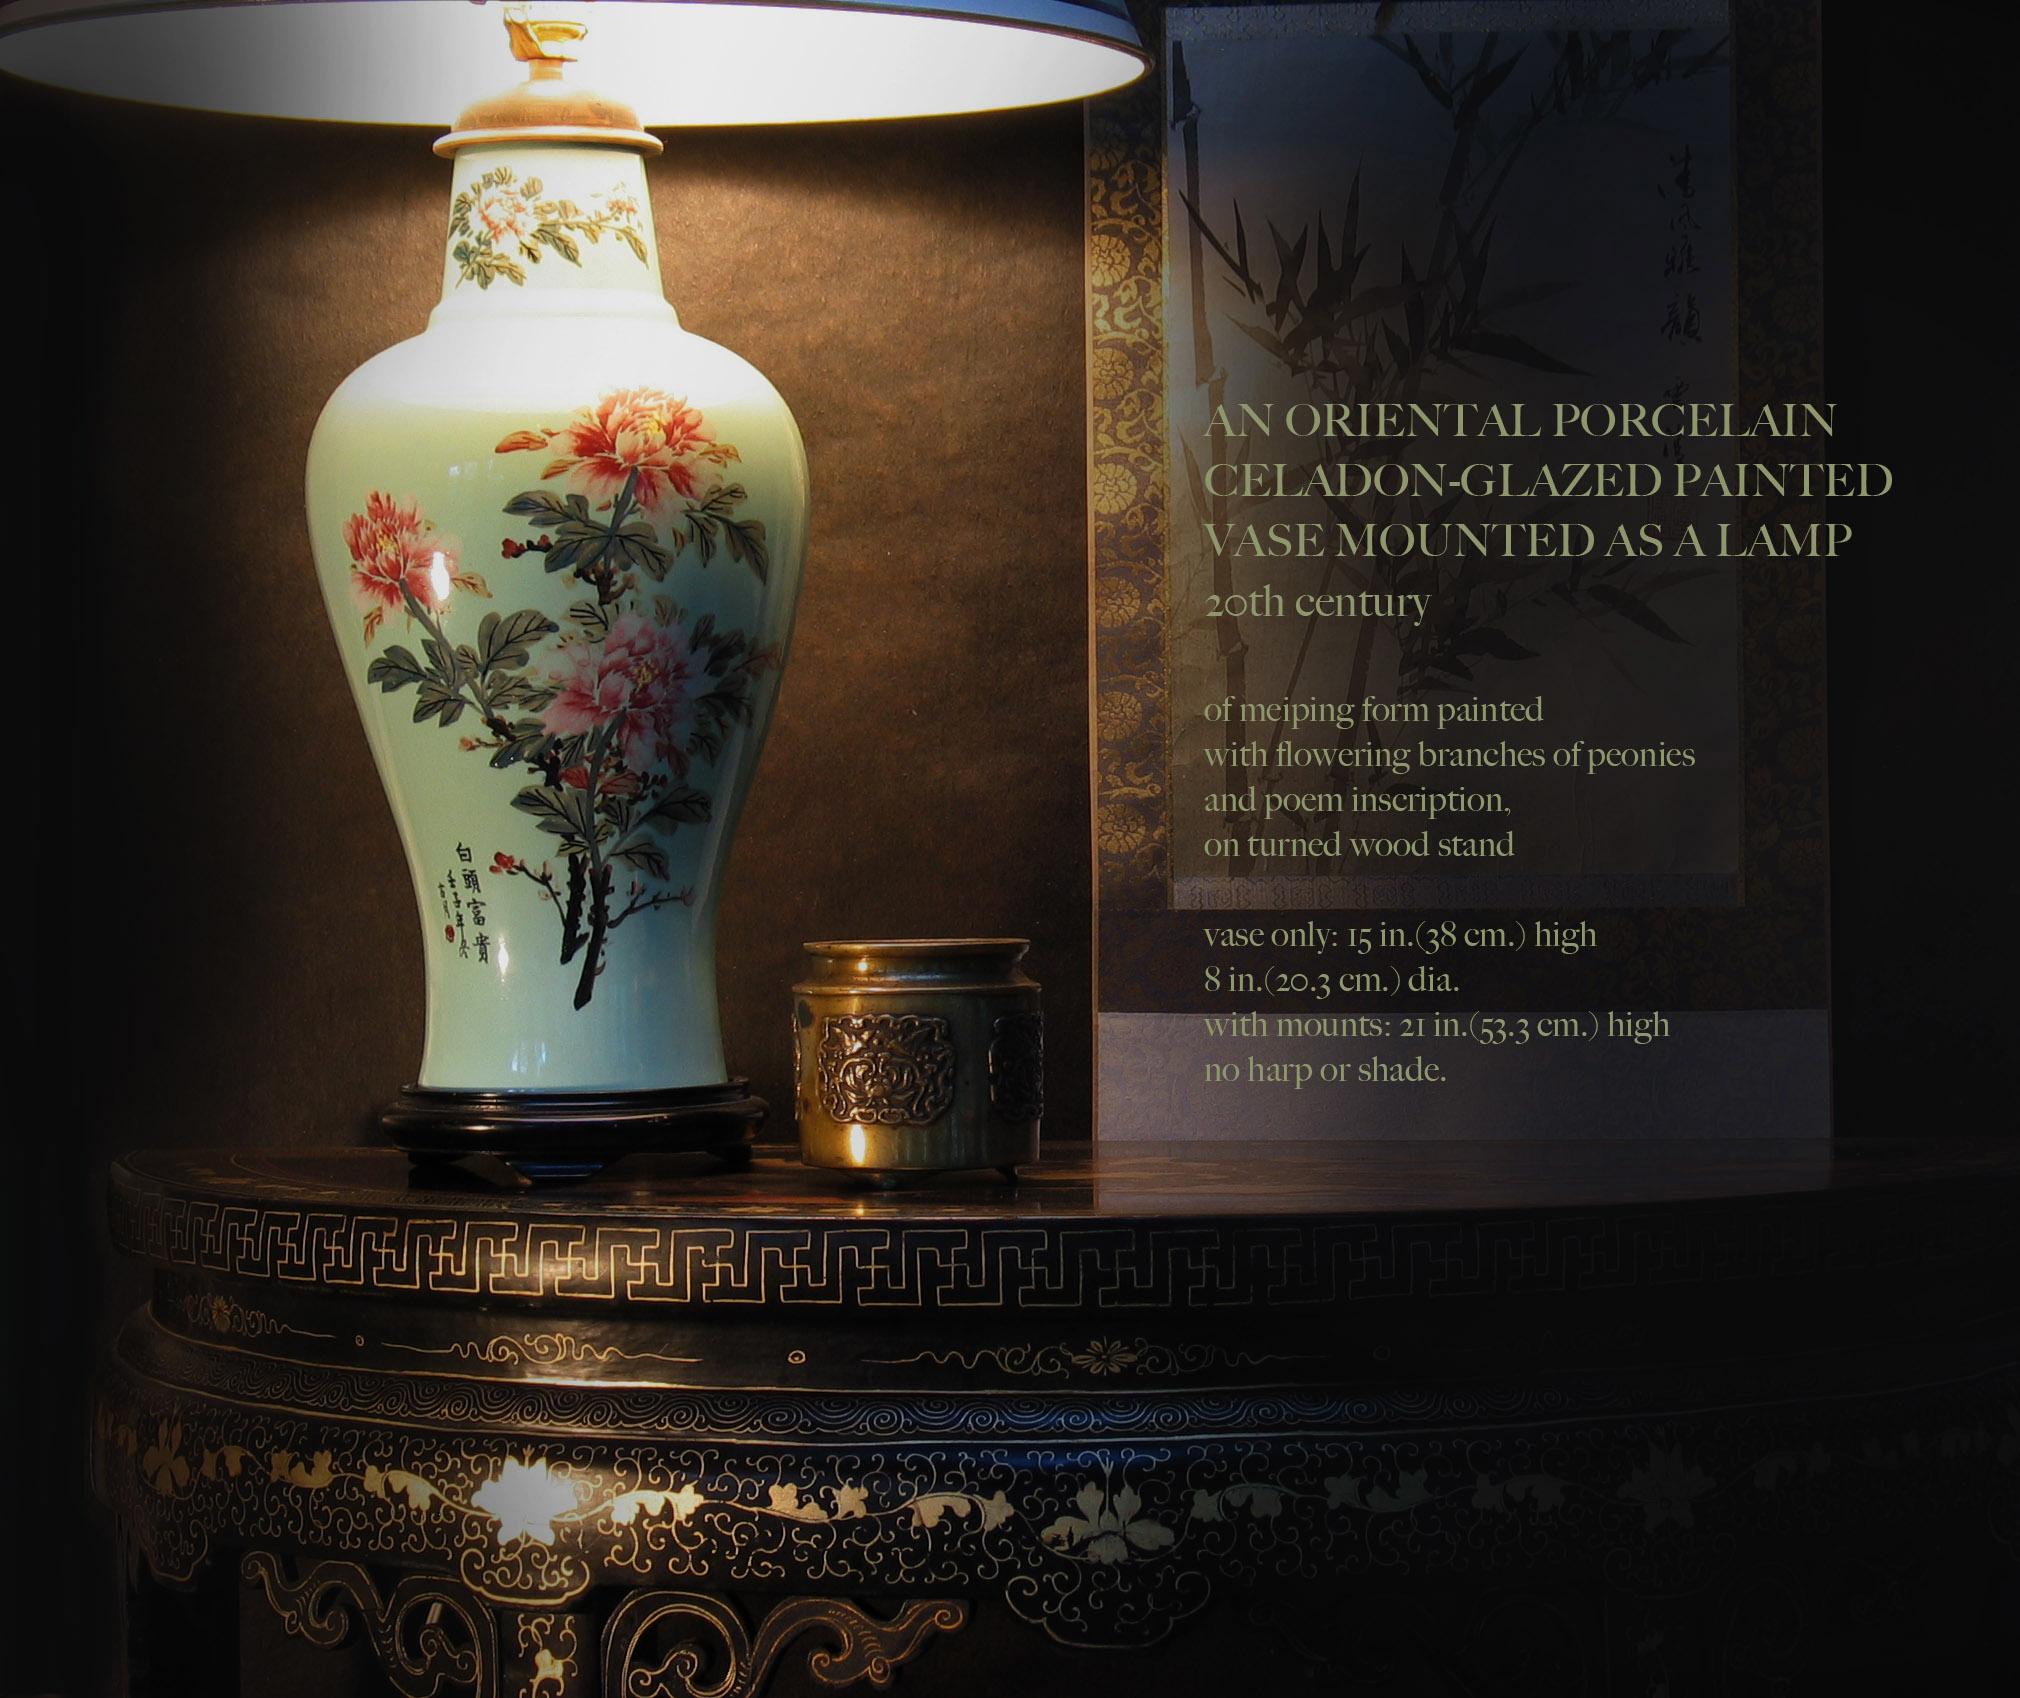 Une porcelaine orientale
Peintures céladon
Vase monté comme une lampe
20ème siècle.

De forme meiping peinte
avec des branches fleuries de pivoines
et l'inscription du poème,
sur un support en bois tourné.

Mesures : vase seul : 38 cm de